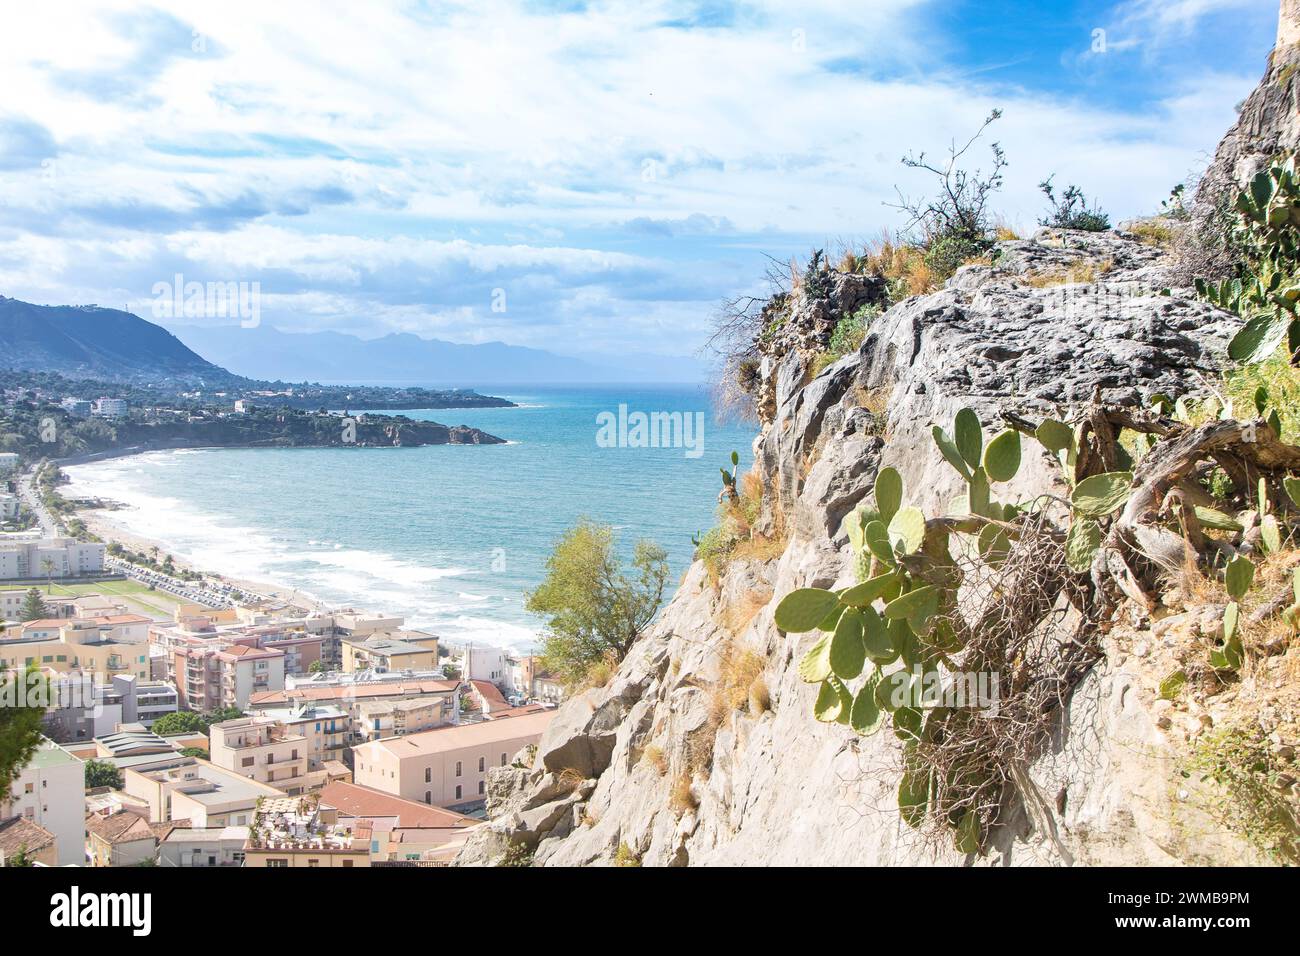 Le rocher de Cefalu ( la rocca di Cefalu) et les ruines du vieux château, province de Palerme, Sicile, Italie Banque D'Images